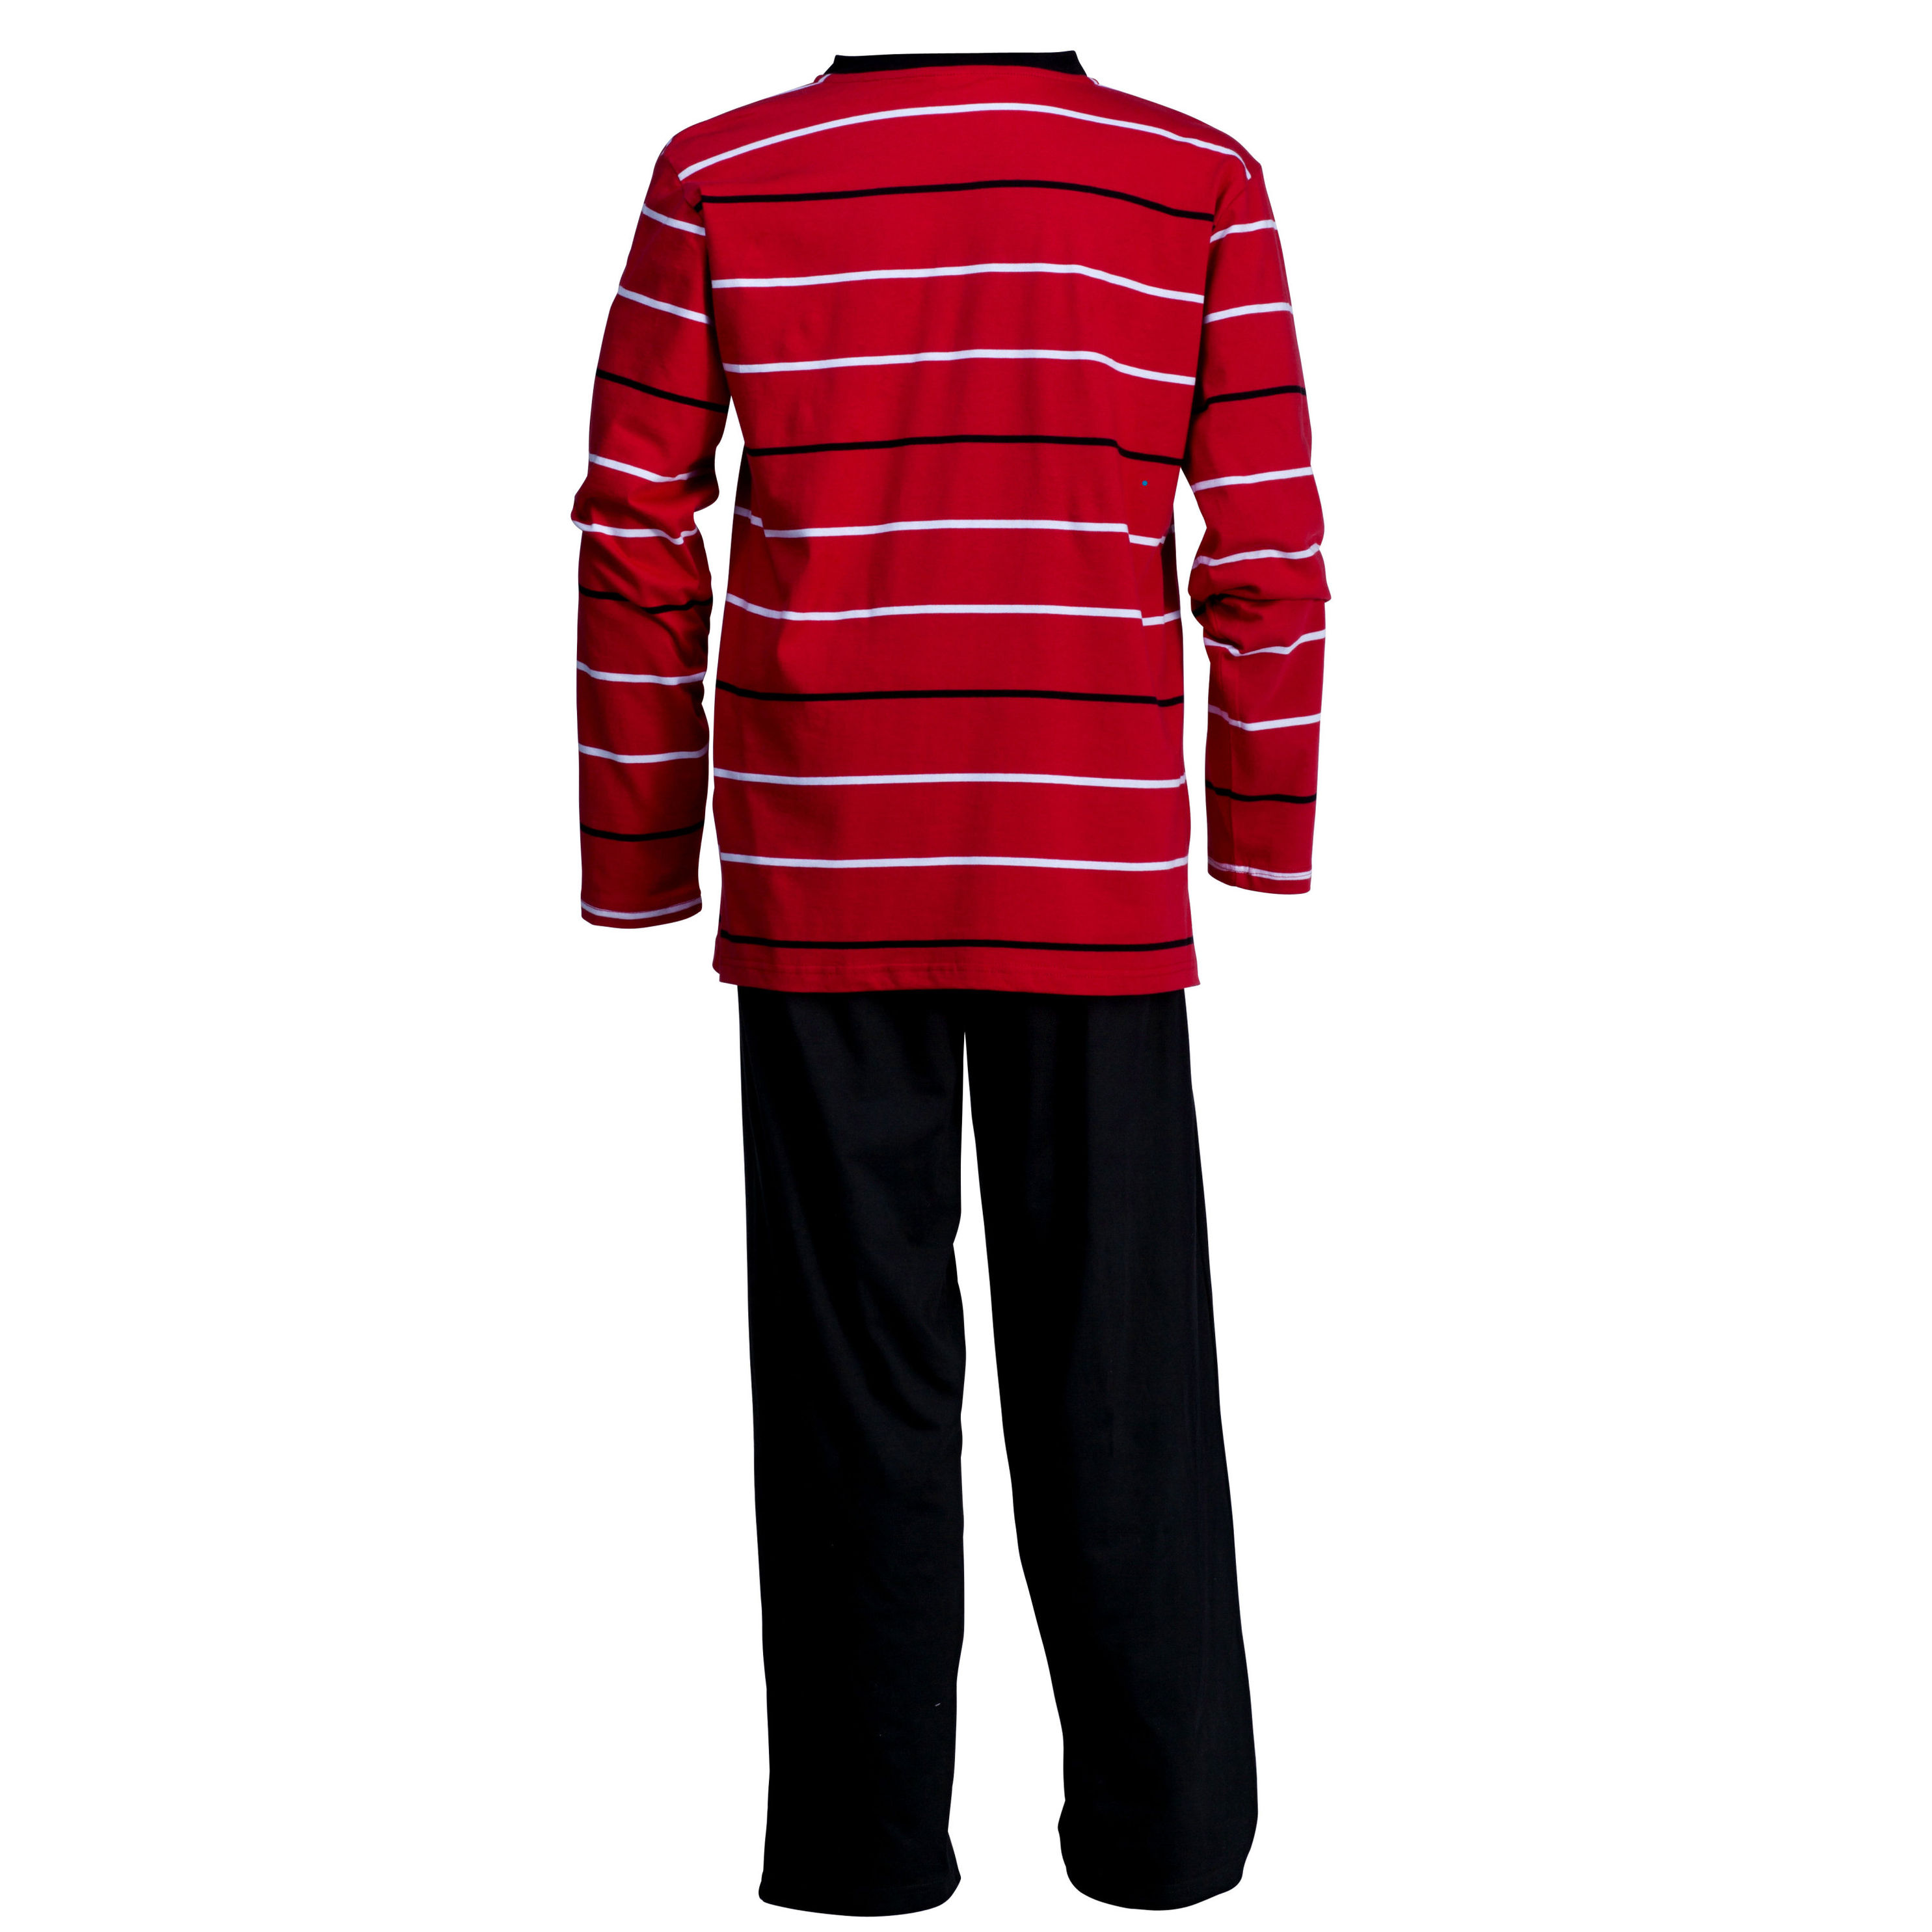 Herren Schlafanzug 2-teilig, rot schwarz Größe: 50 52 | Weltbild.de